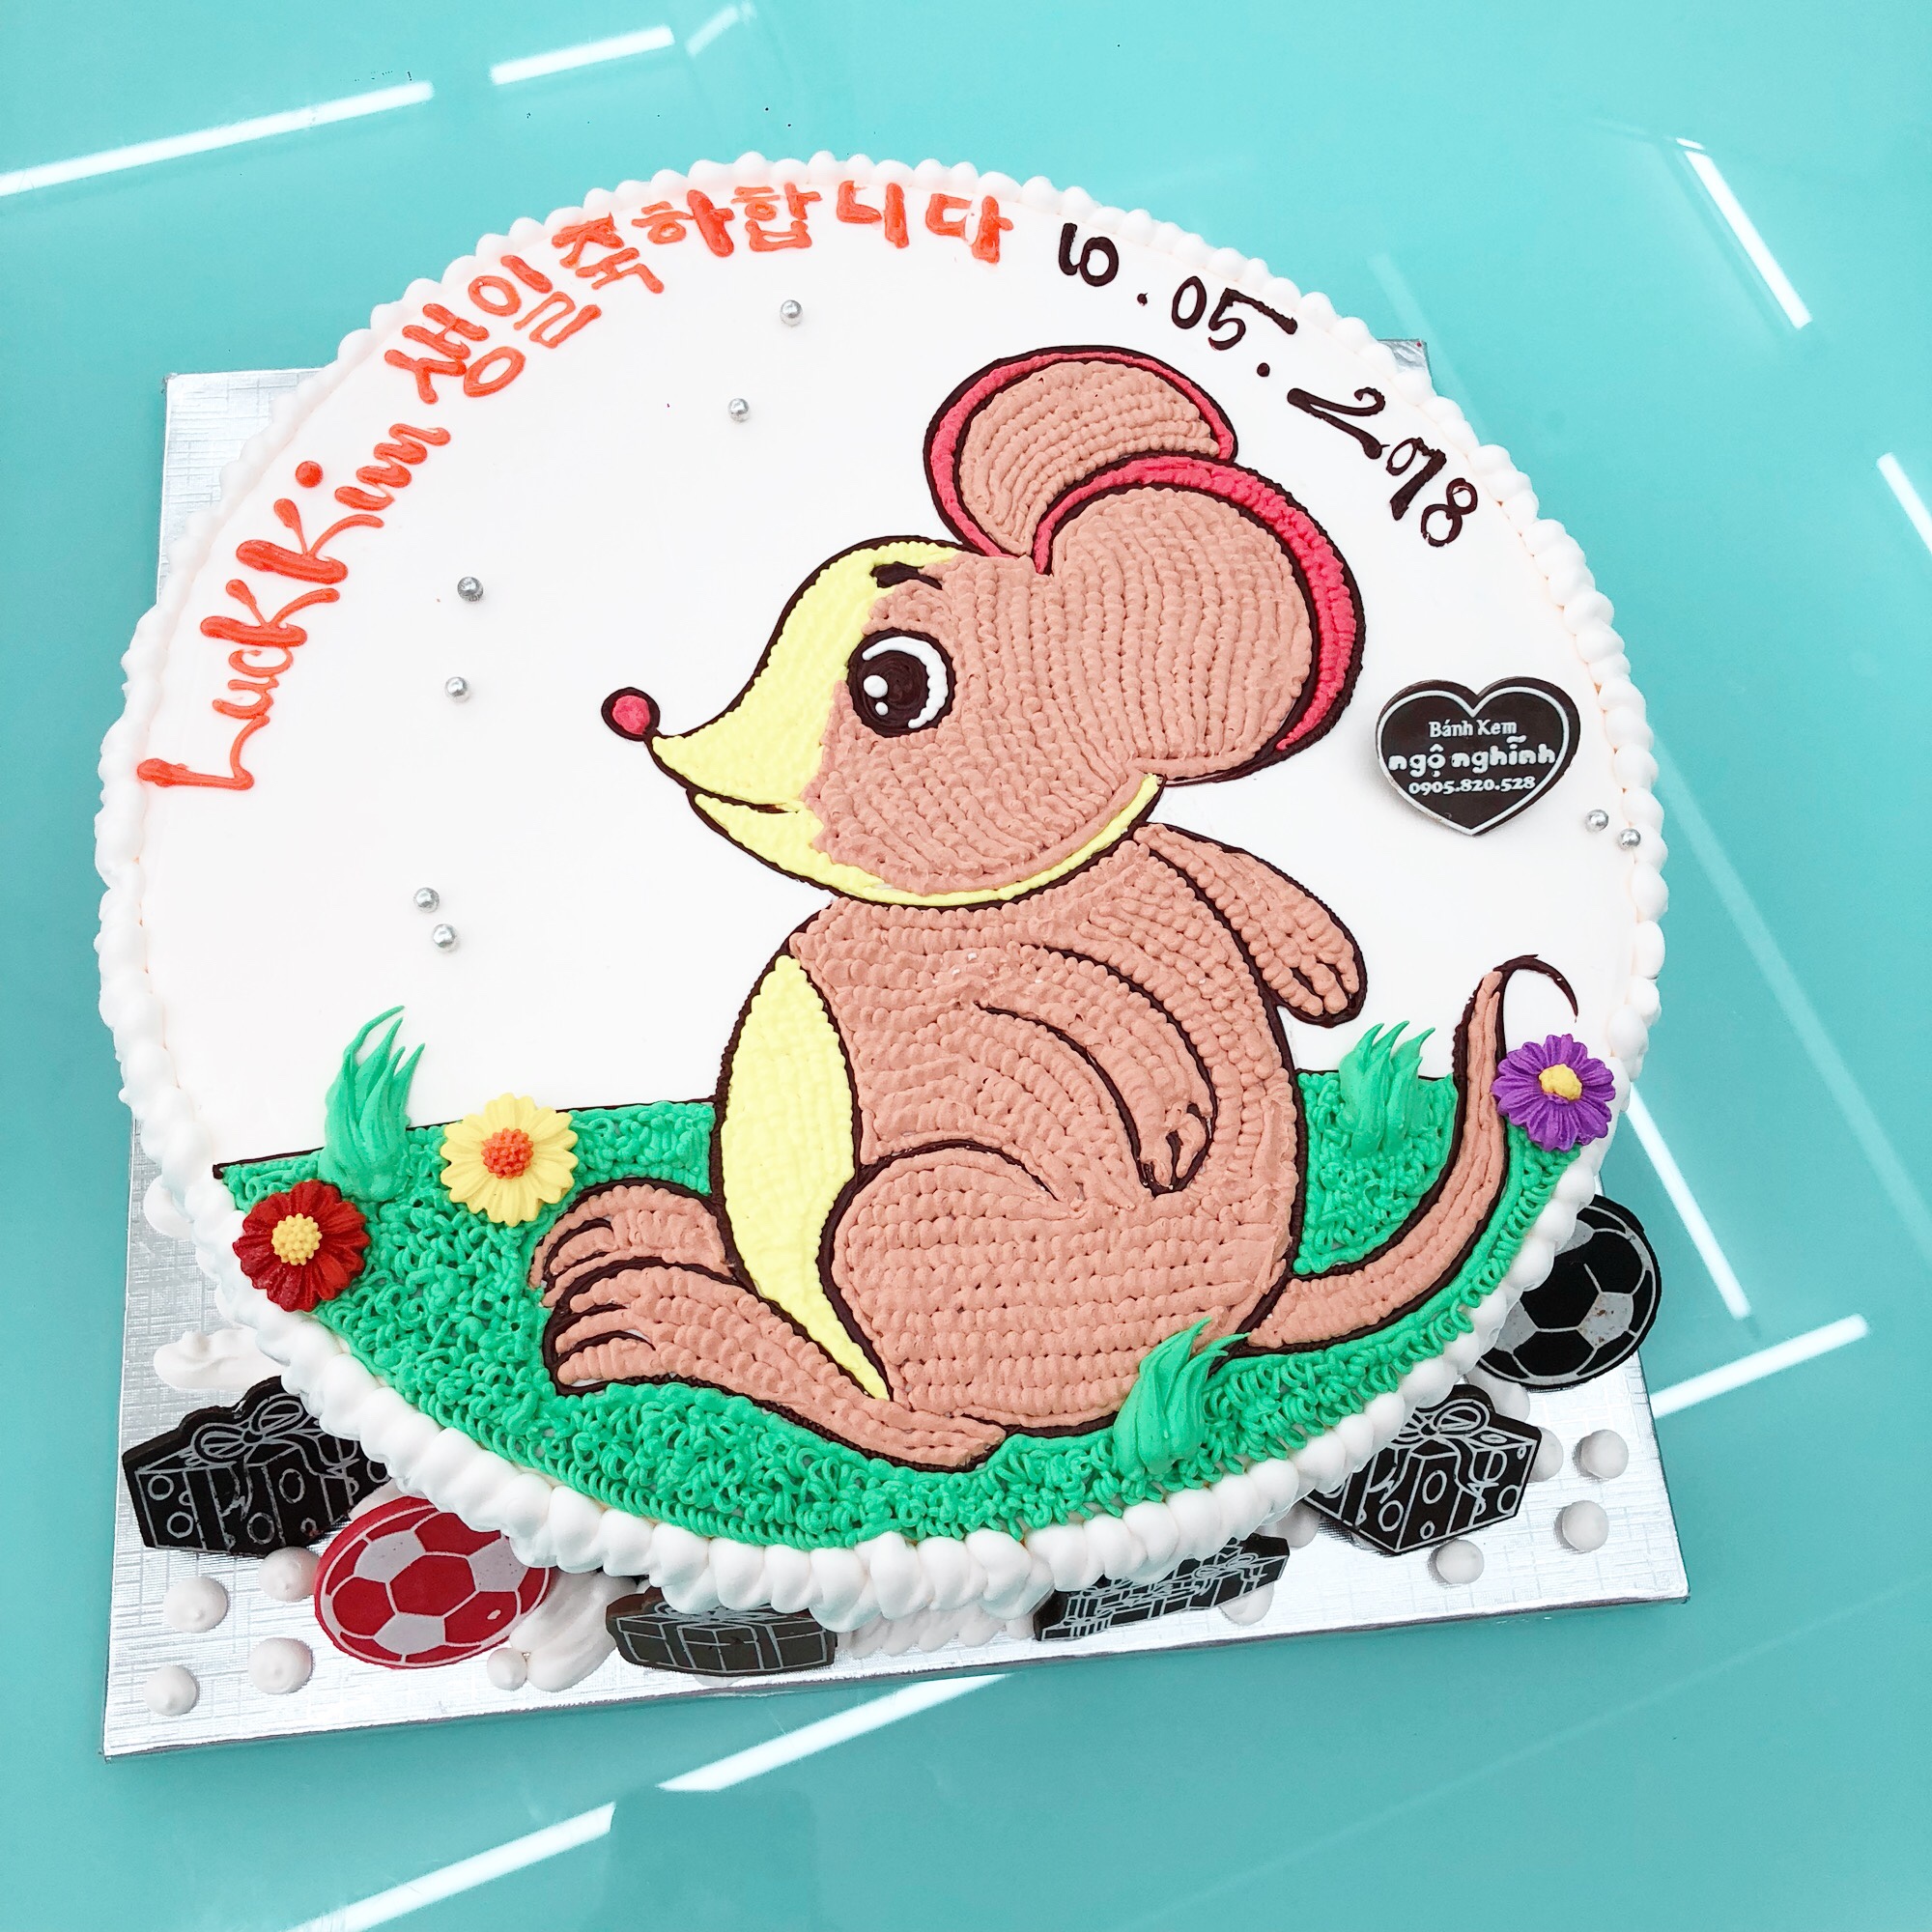 Nét tinh tế và đáng yêu của bánh sinh nhật vẽ hình con chuột tuổi tý sẽ gợi lên những cảm xúc ngọt ngào. Mùi thơm ngào ngạt hòa quyện cùng chiếc bánh chuột ngộ nghĩnh, chắc chắn sẽ làm bạn trở nên thích thú.